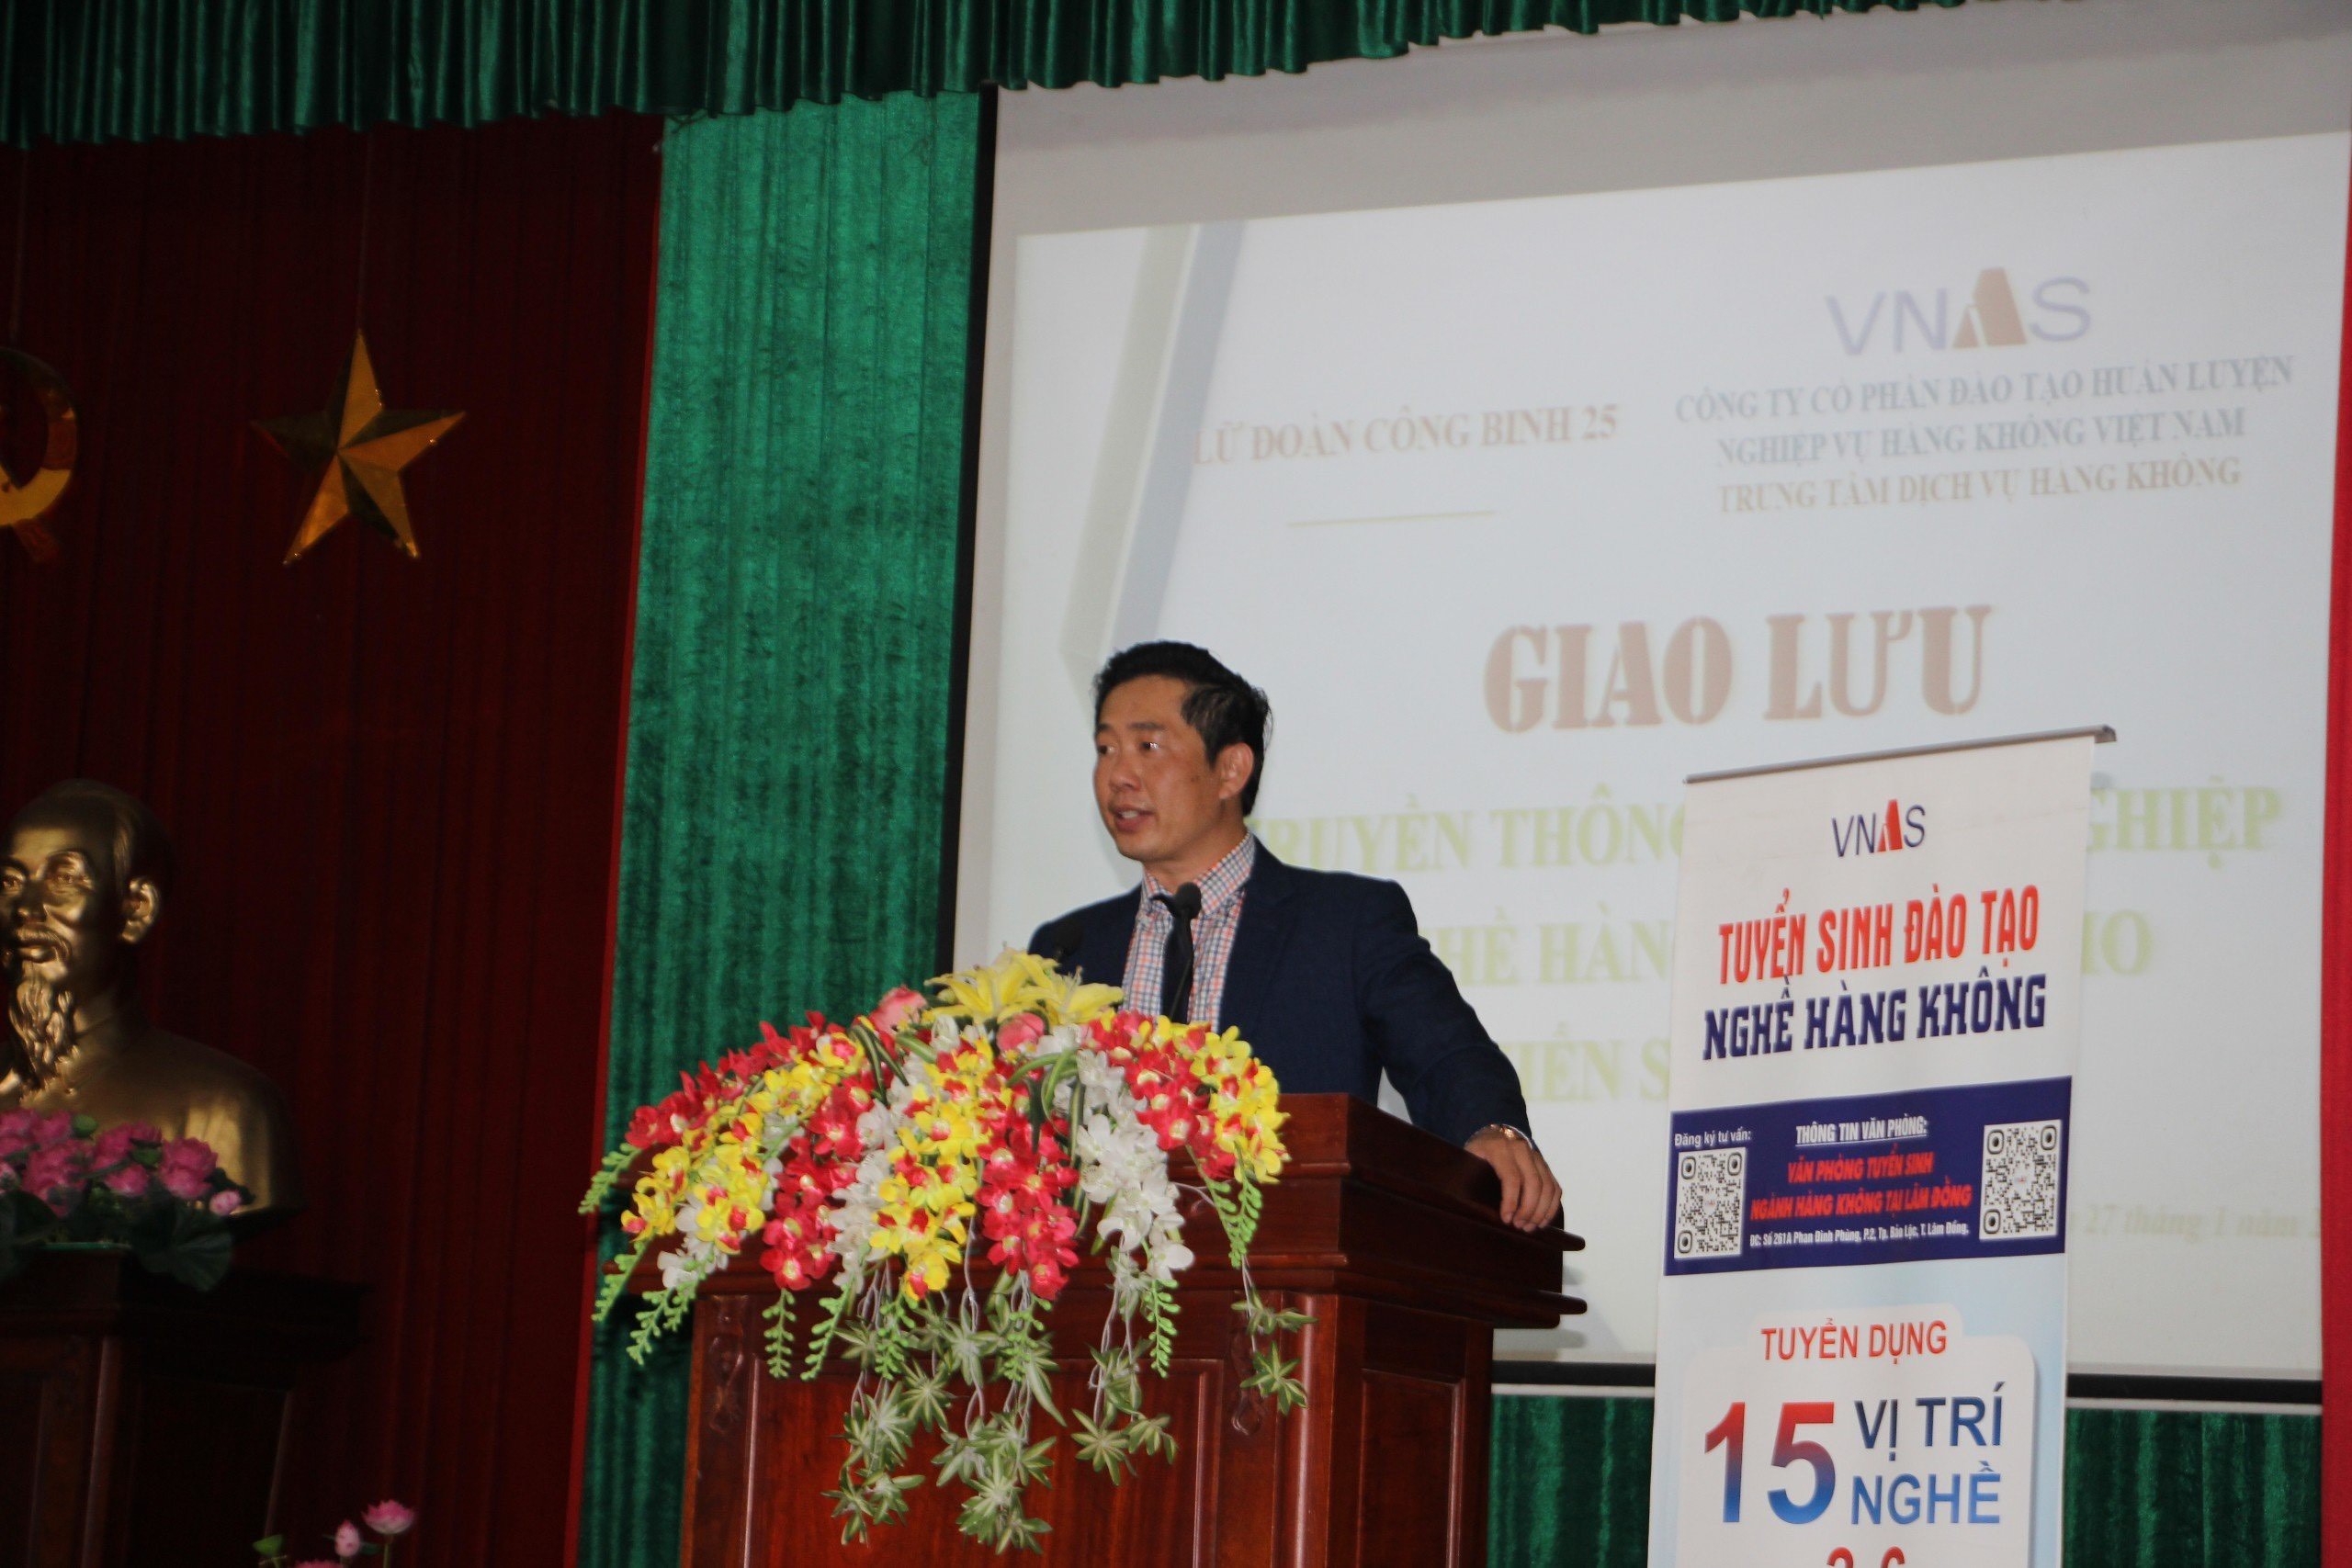 VPTS Lâm Đồng-Giao lưu, giới thiệu nghề hàng không cho chiến sỹ nghĩa vụ Lữ đoàn Công binh 25